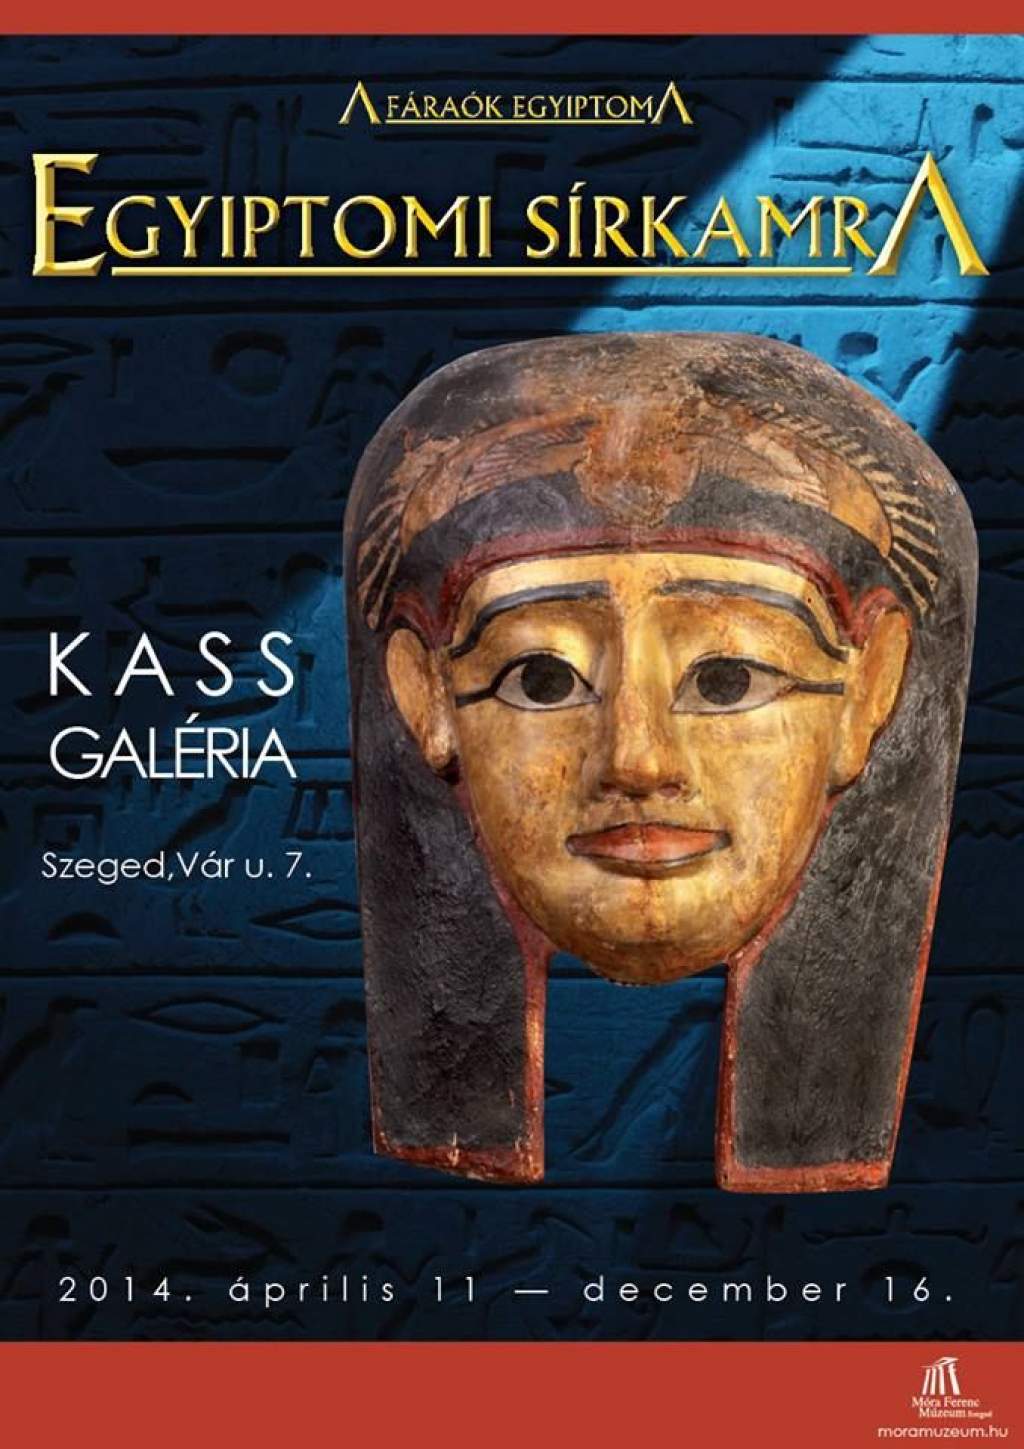 Szerdán érkeznek az egyiptomi sírkamra kincsei a Kass Galériába